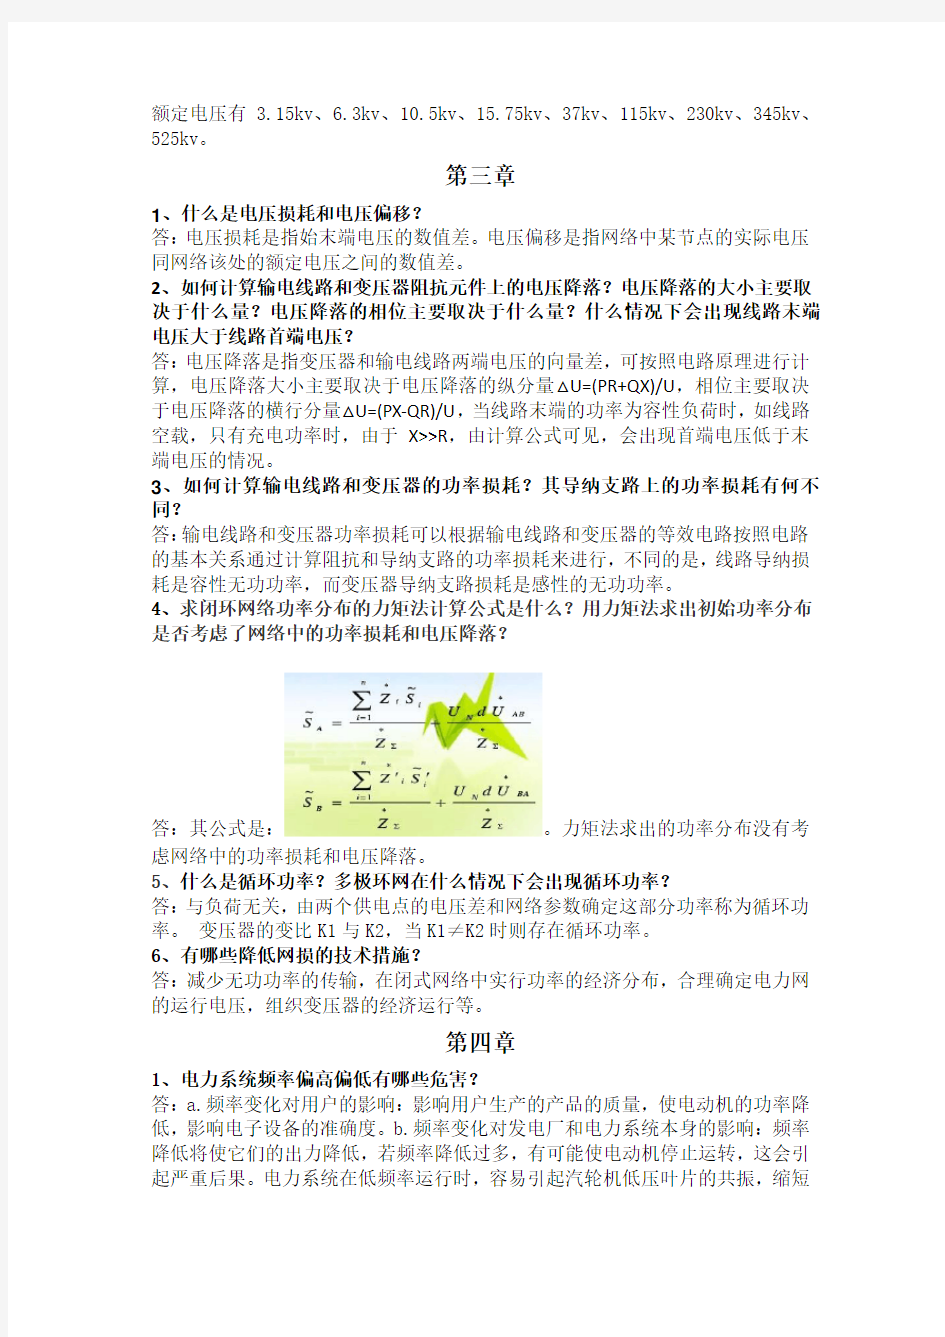 电力系统分析理论(第二版-刘天琪-邱晓燕)课后思考题标准答案(不包括计算)